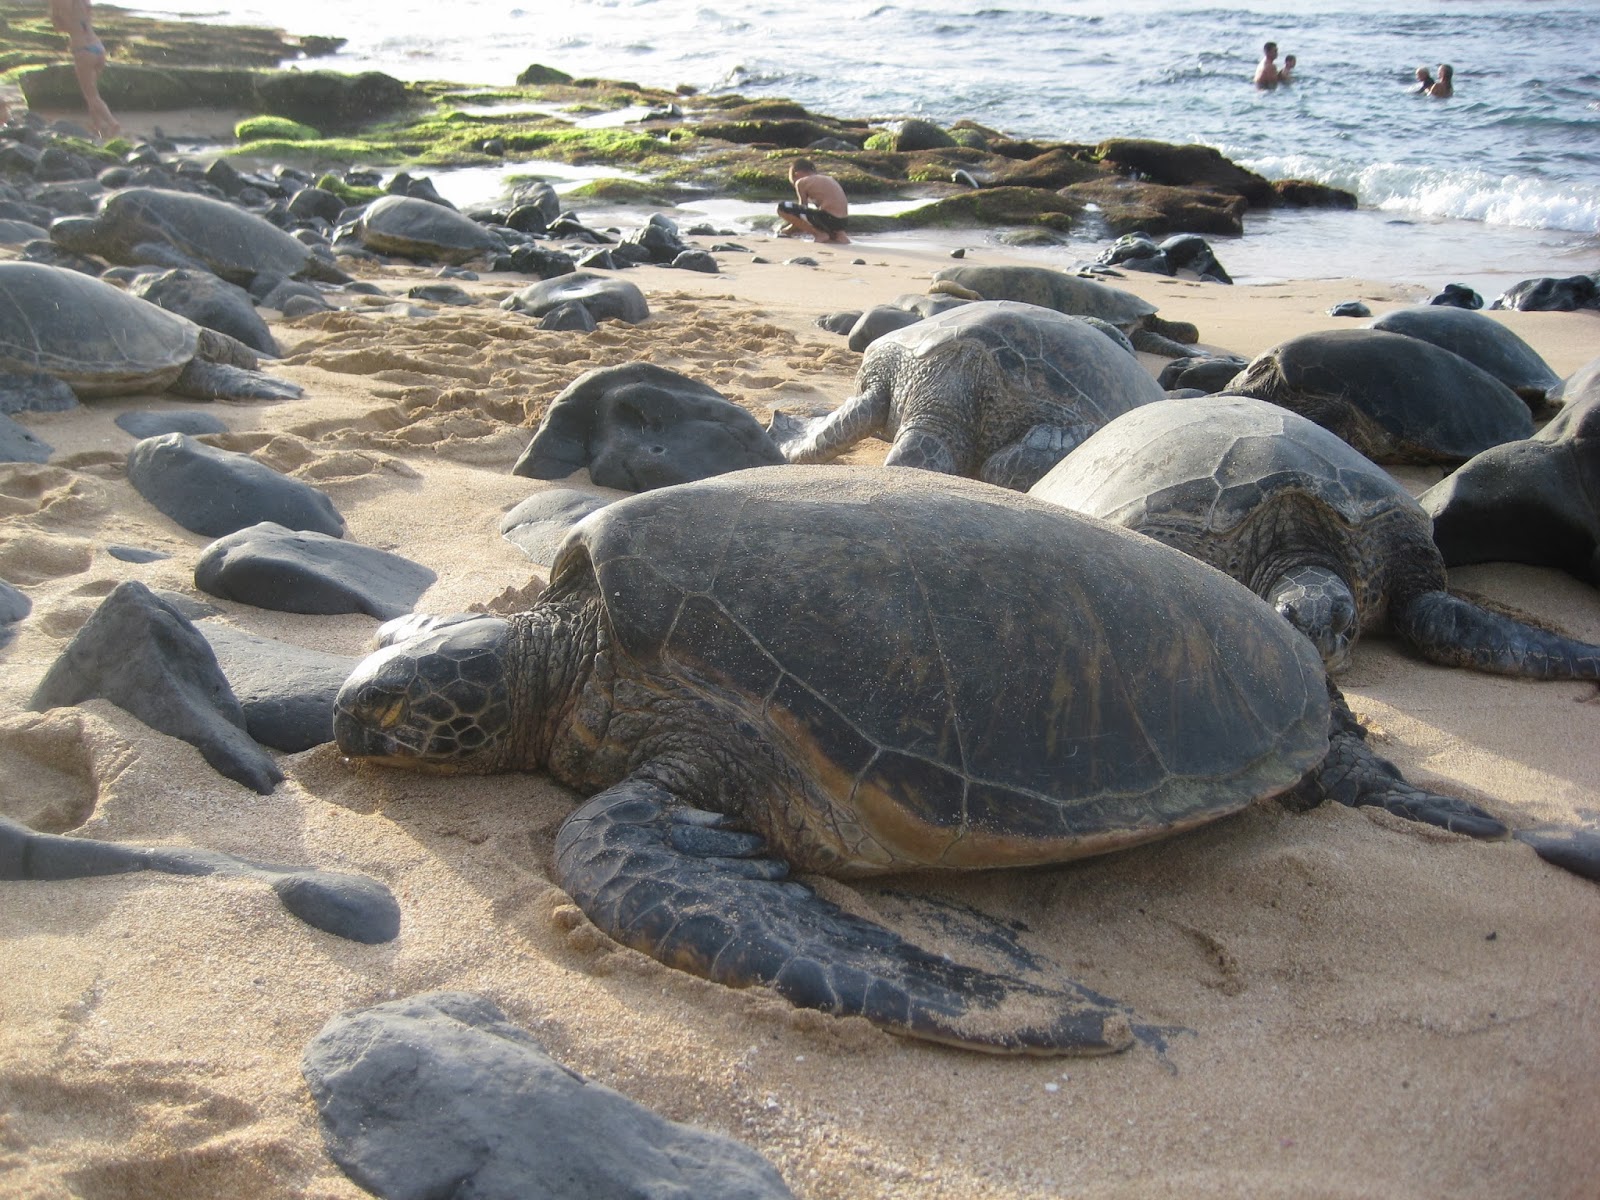 Turtle oahu hawaiian beach tortuga hawaiana mar maui peligro arenosa endangered airbnbs sandy moneyinc